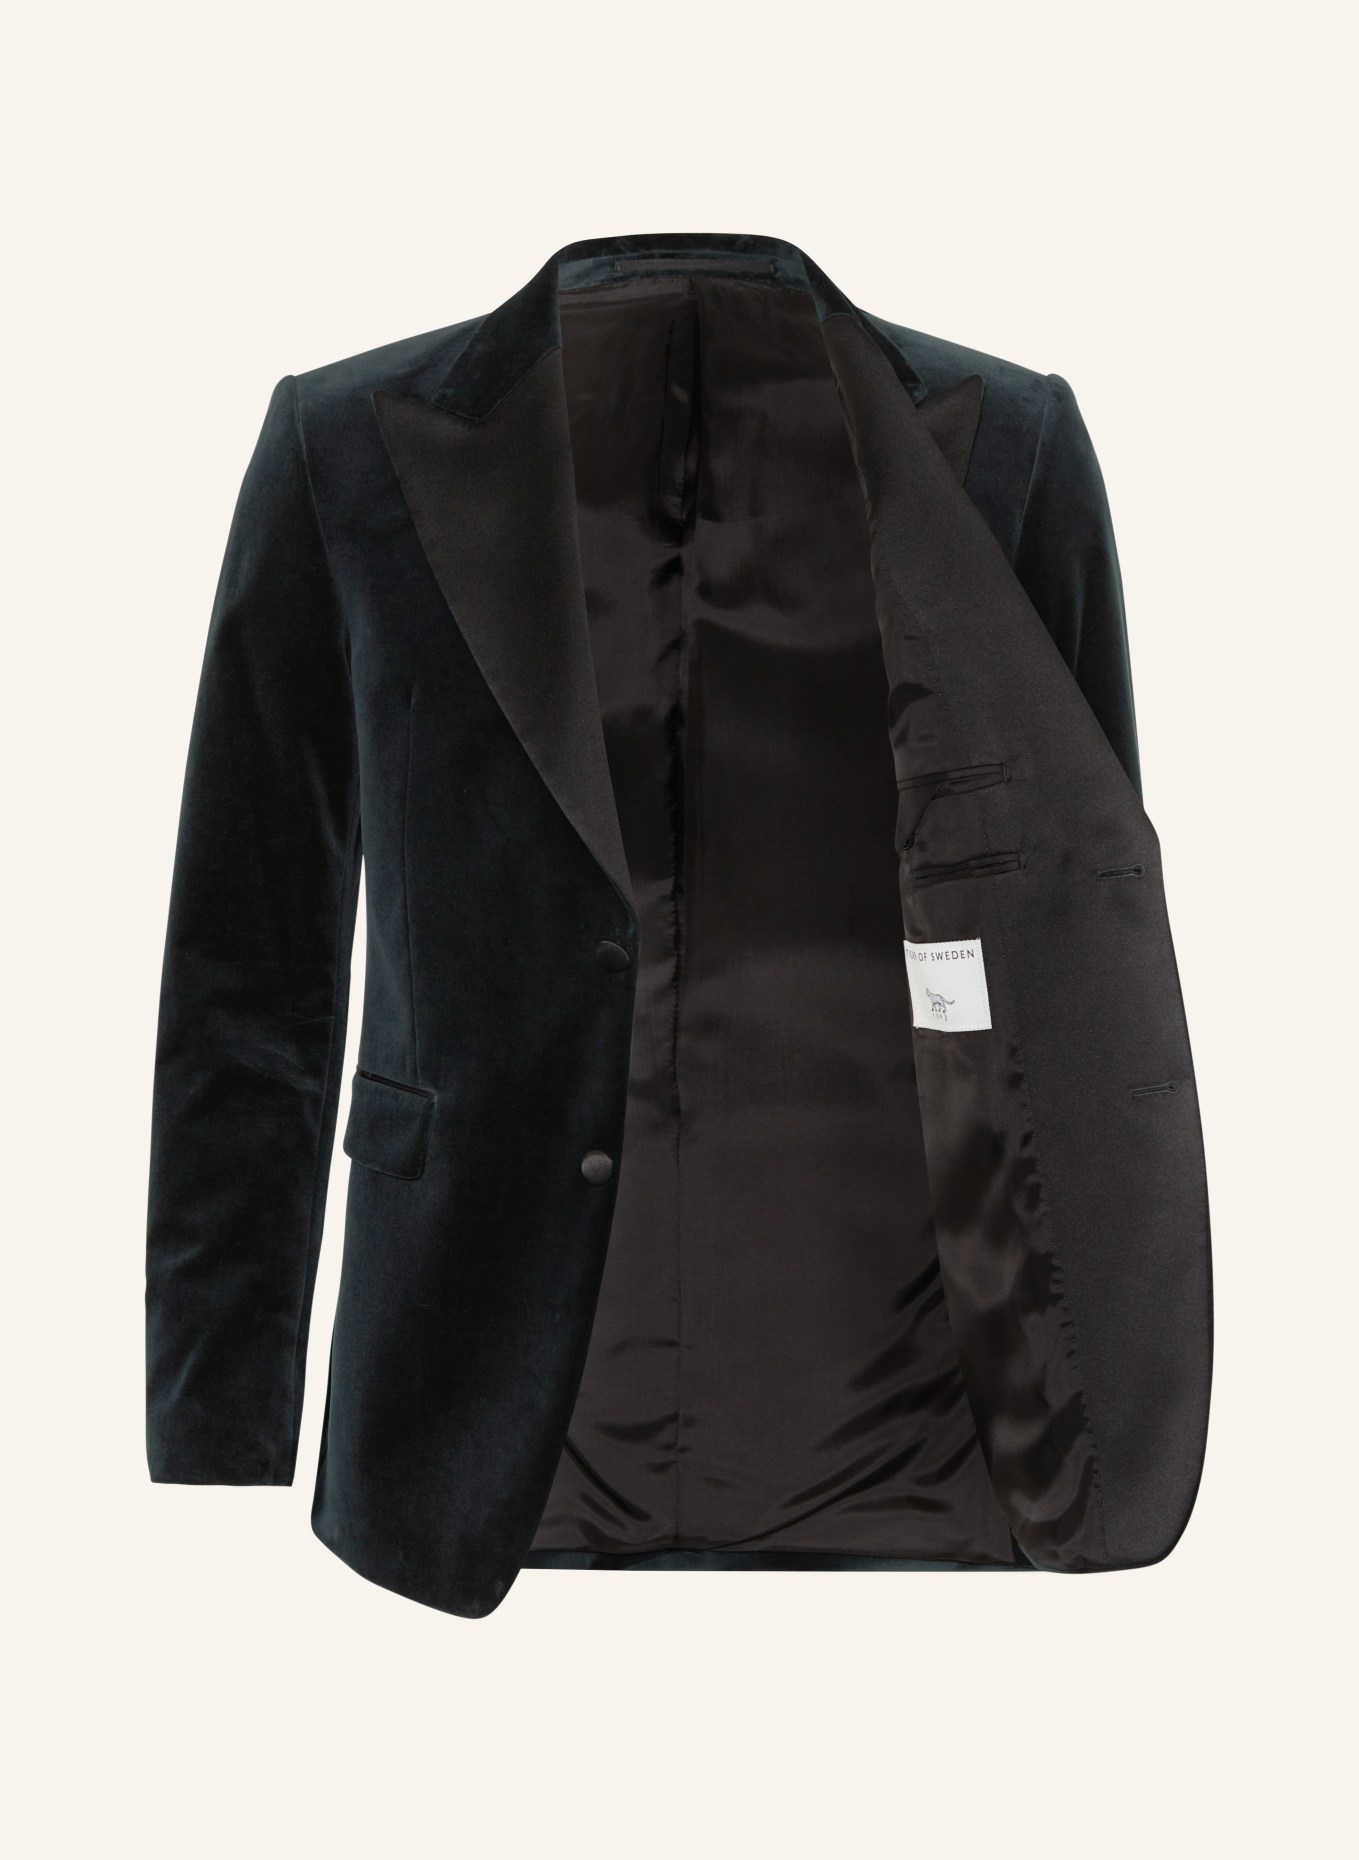 TIGER OF SWEDEN Smoking tailored jacket JEFFERS regular fit made of velvet, Color: DARK GREEN/ BLACK (Image 4)